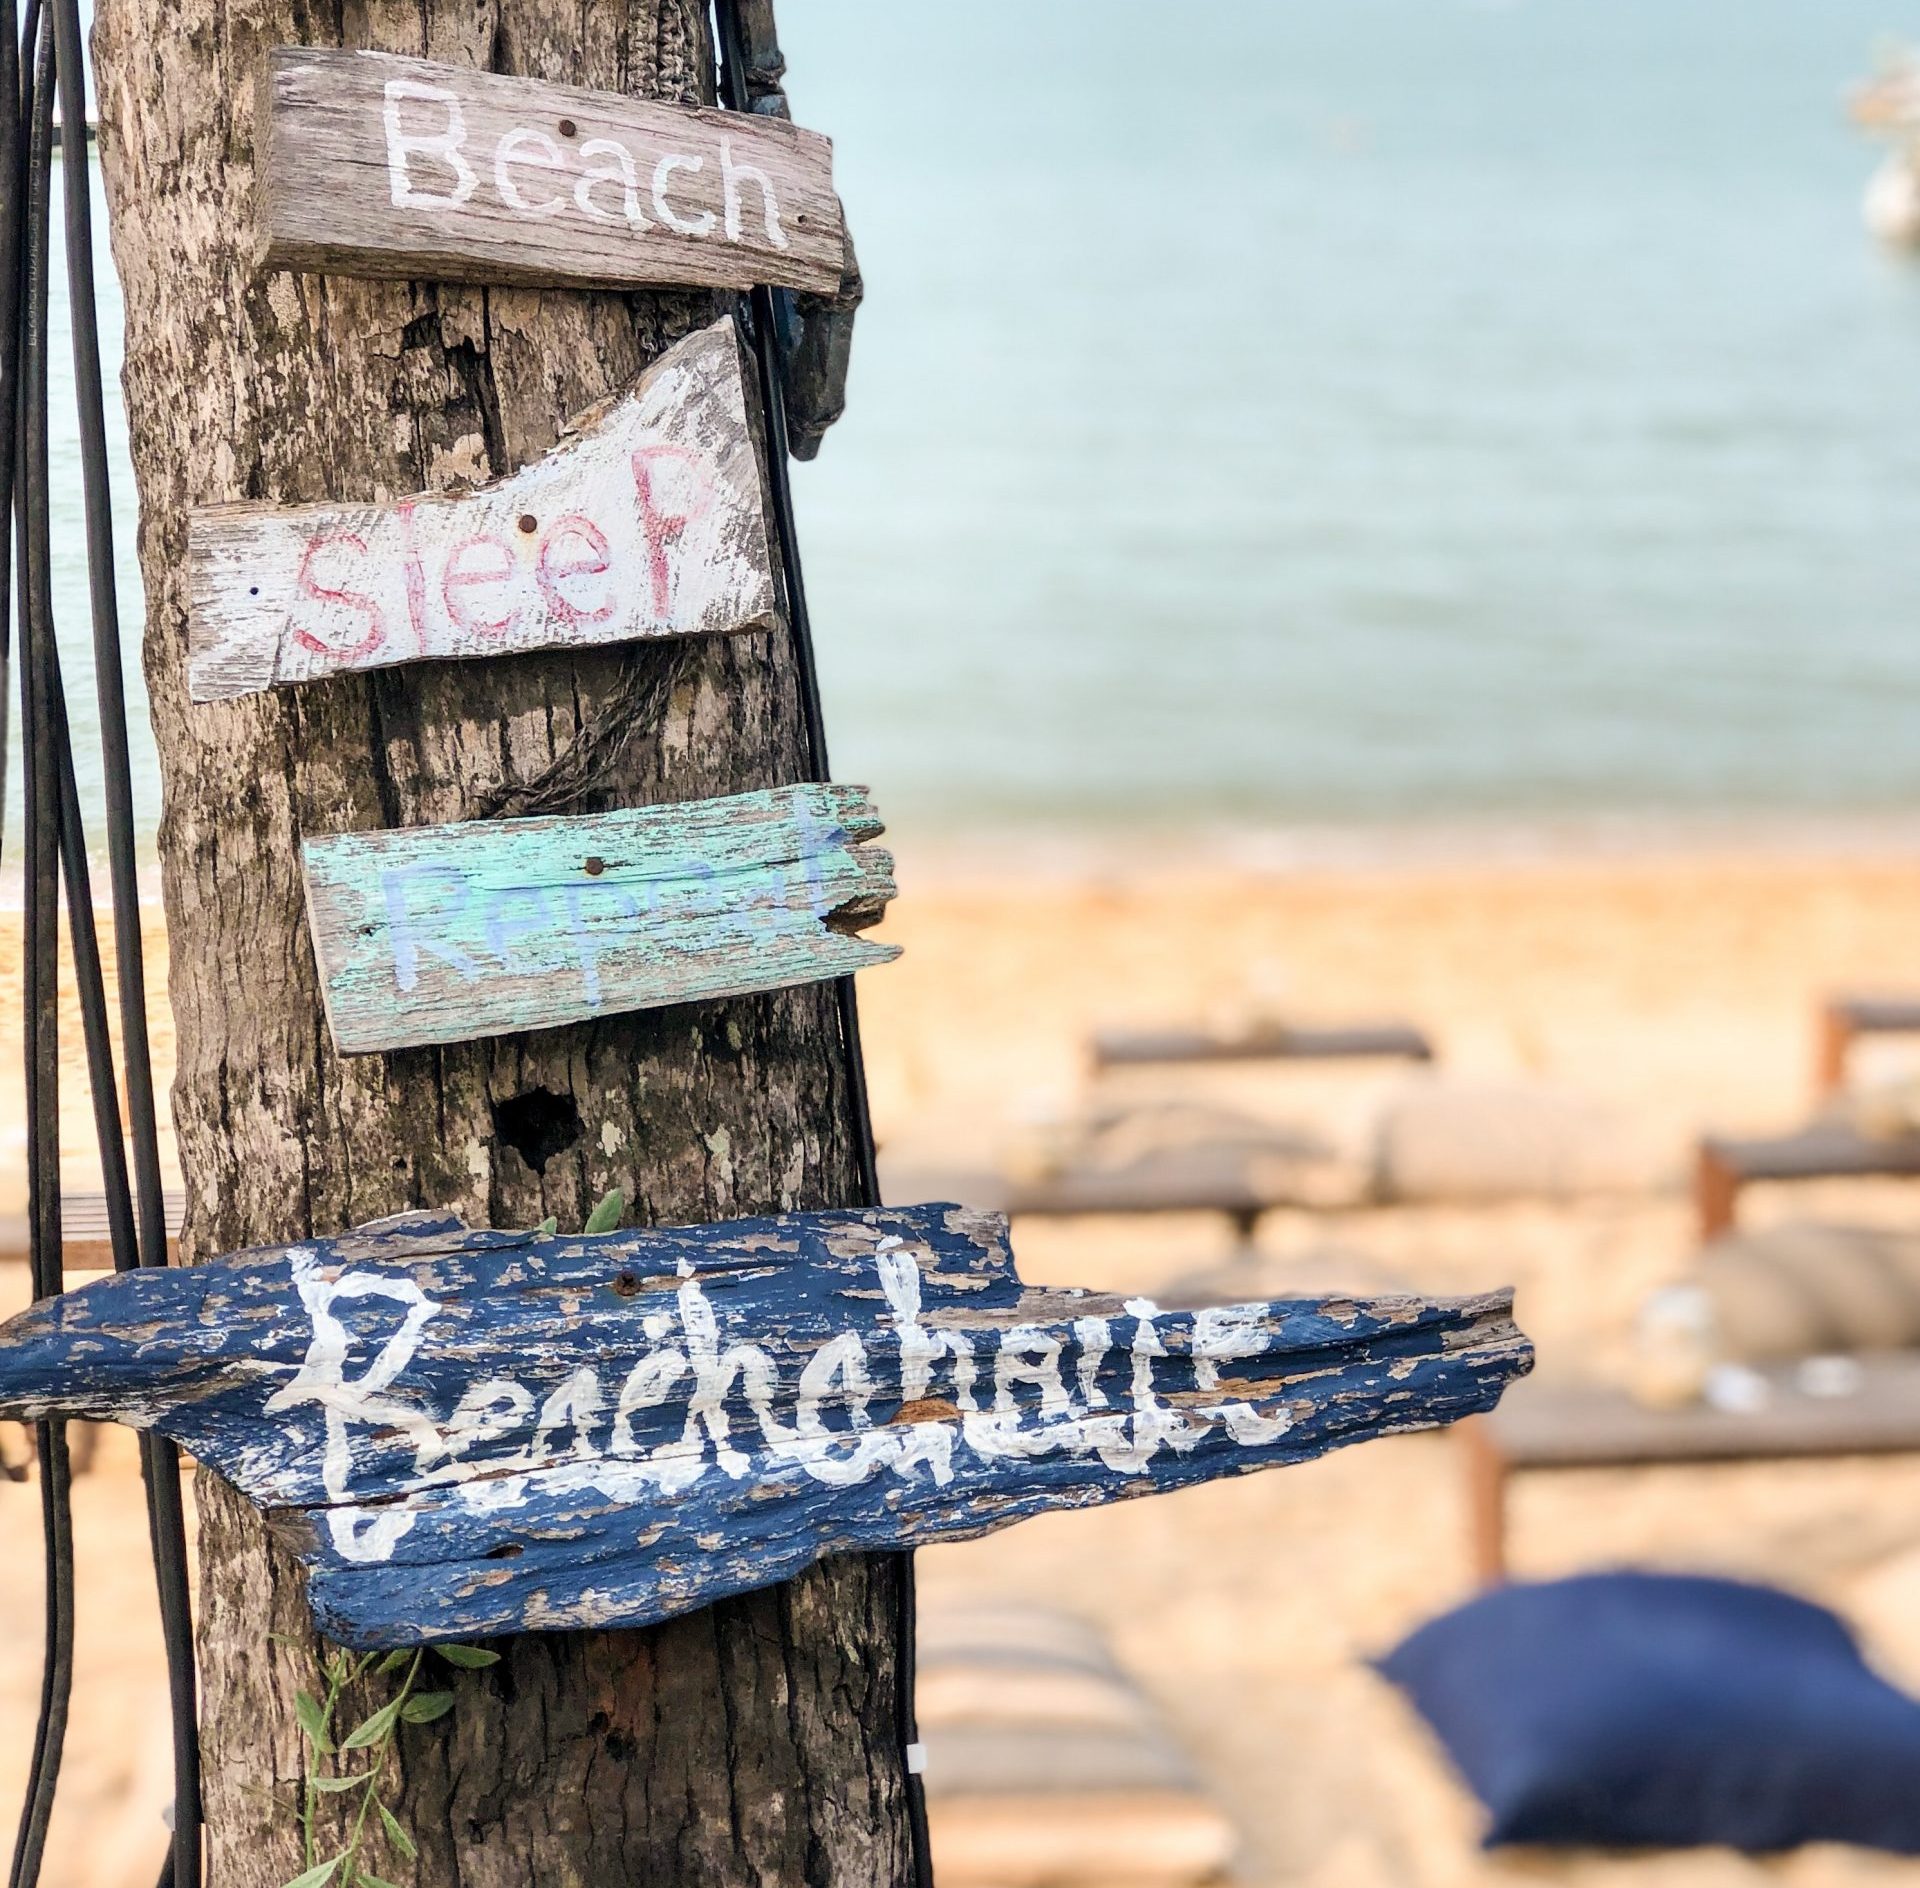 Ein “lokaler” Strandtag; Vermeiden Sie die Touristenmassen und genießen Sie den Strand zusammen mit den lokalen Malageños